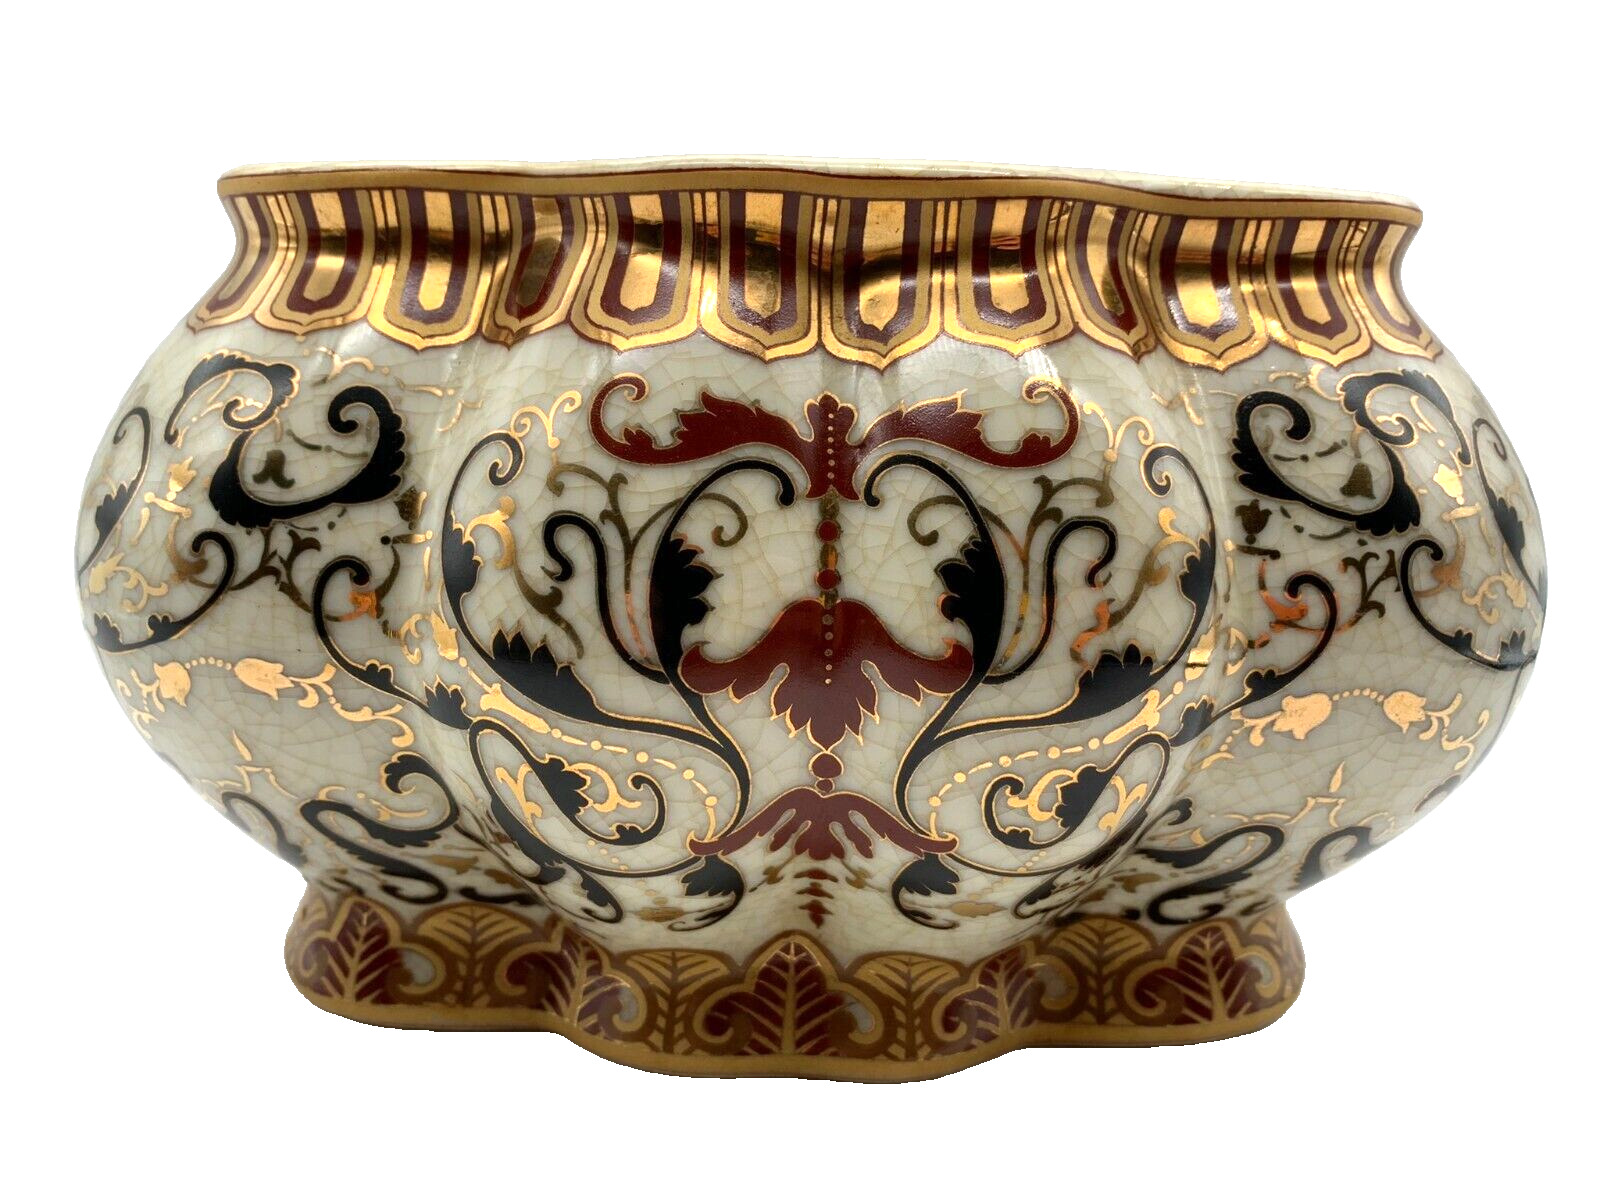 Vintage Amita Decorative Porcelain Ivory Gold Gilt Crackle Glaze Bowl Baroque